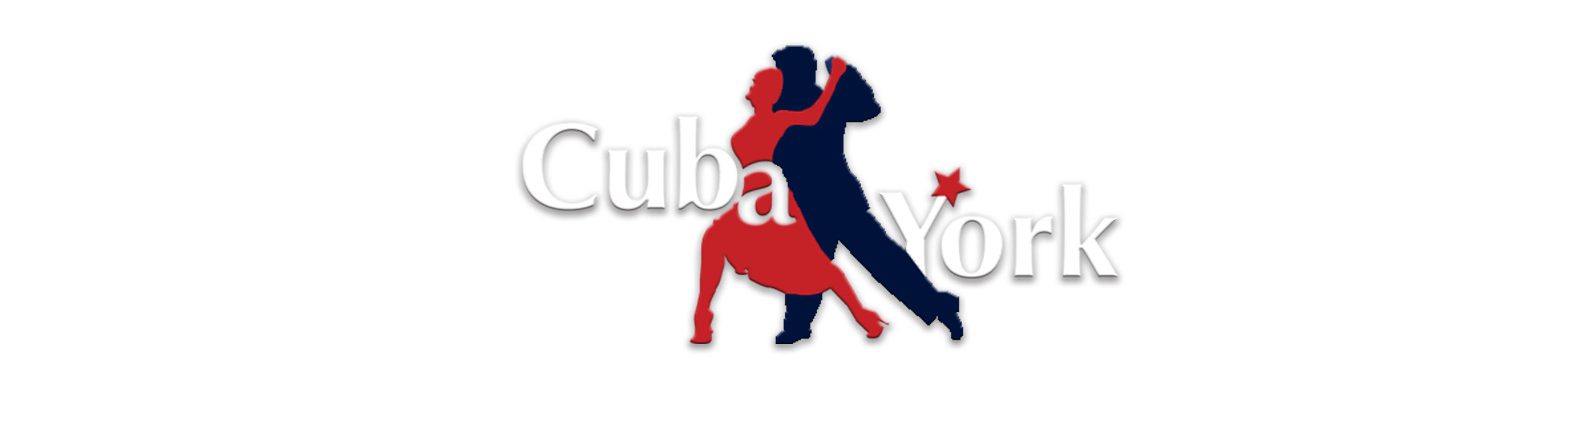 CubaYork Dance School